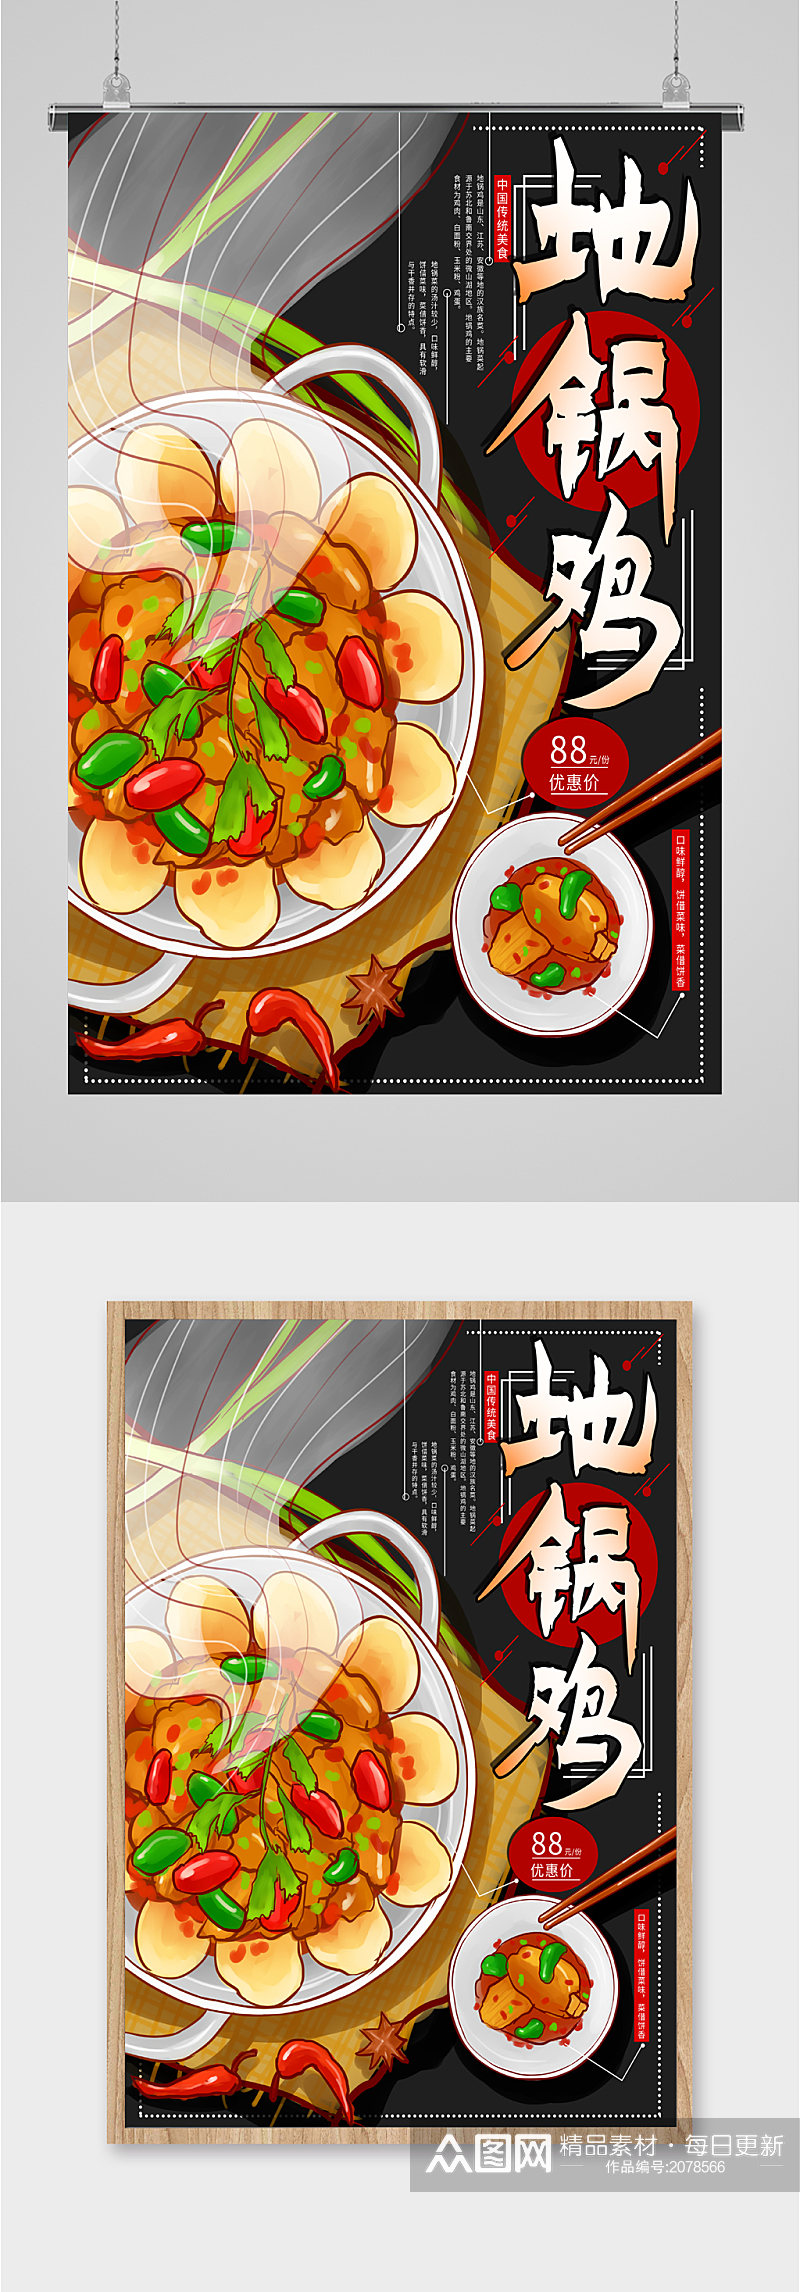 地锅鸡传统美食海报素材